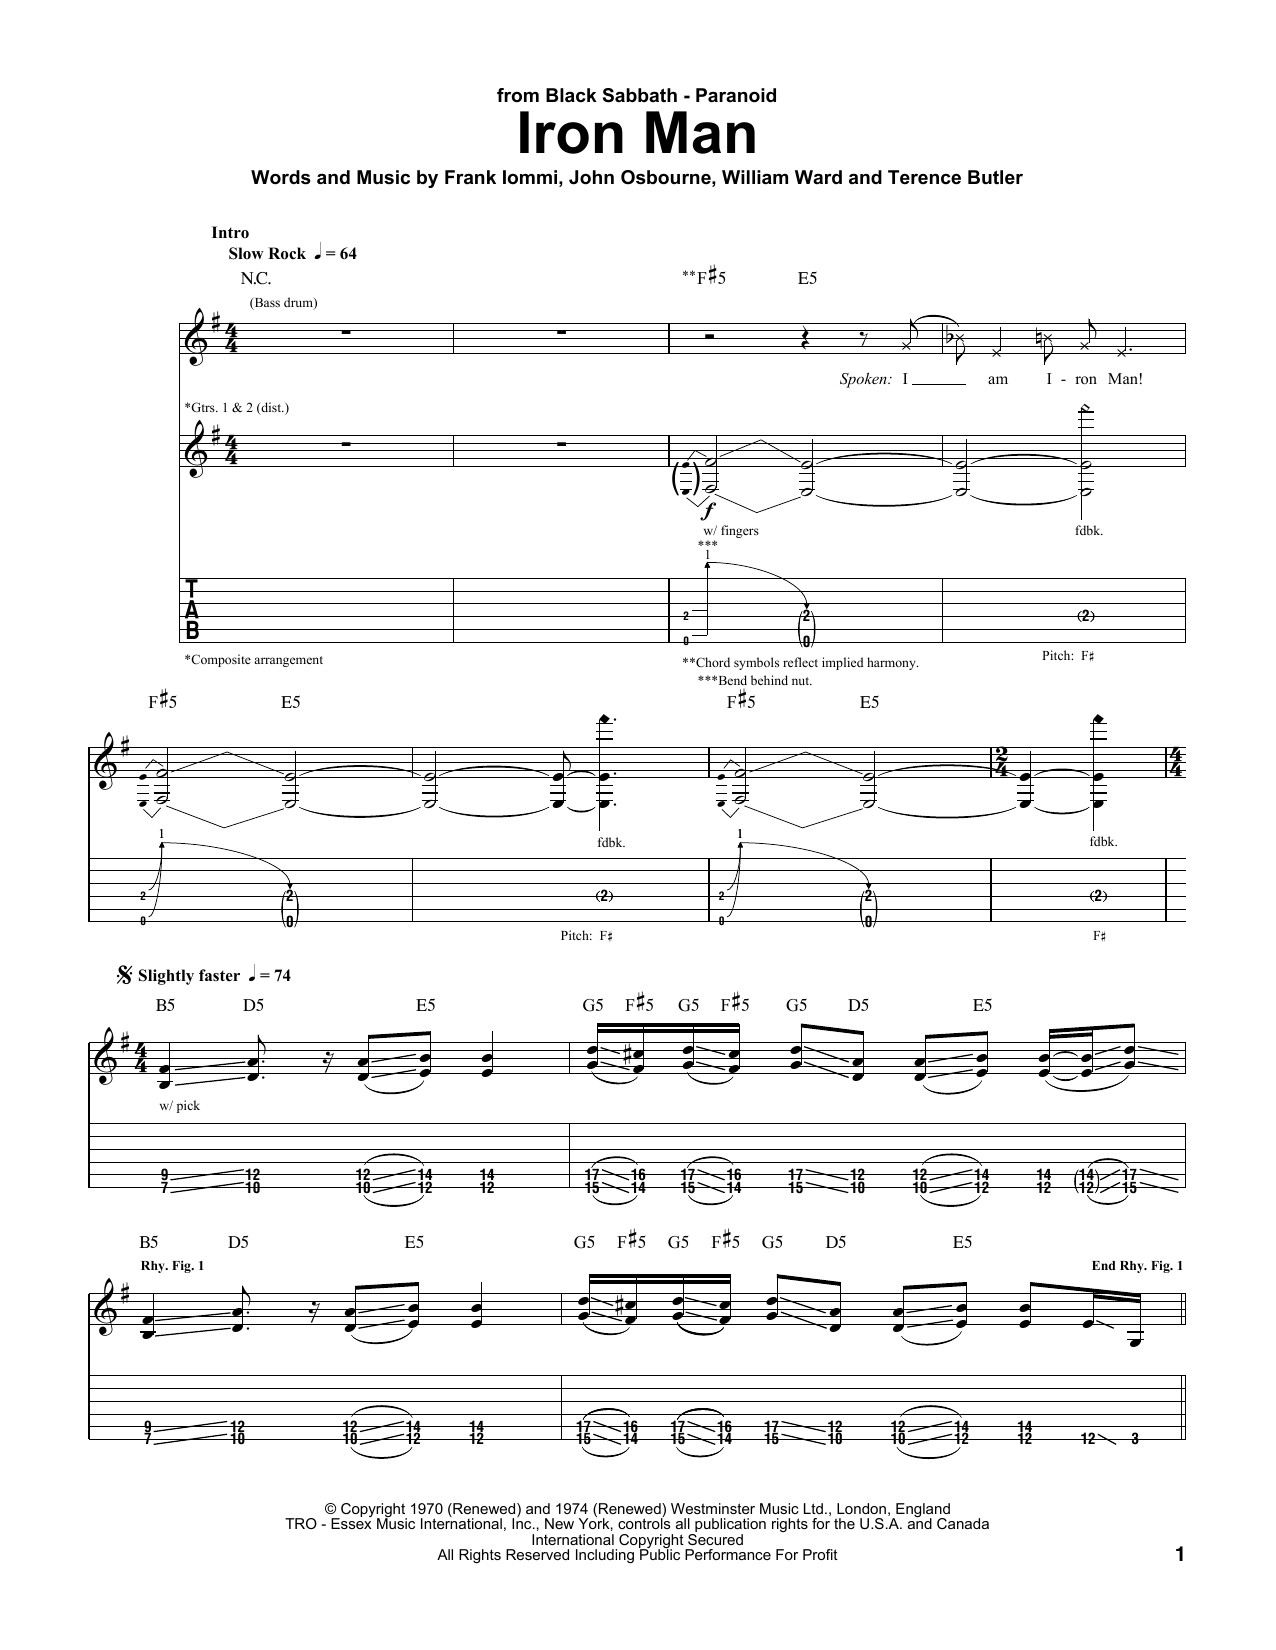 Black Sabbath Iron Man Sheet Music Notes & Chords for Guitar Chords/Lyrics - Download or Print PDF